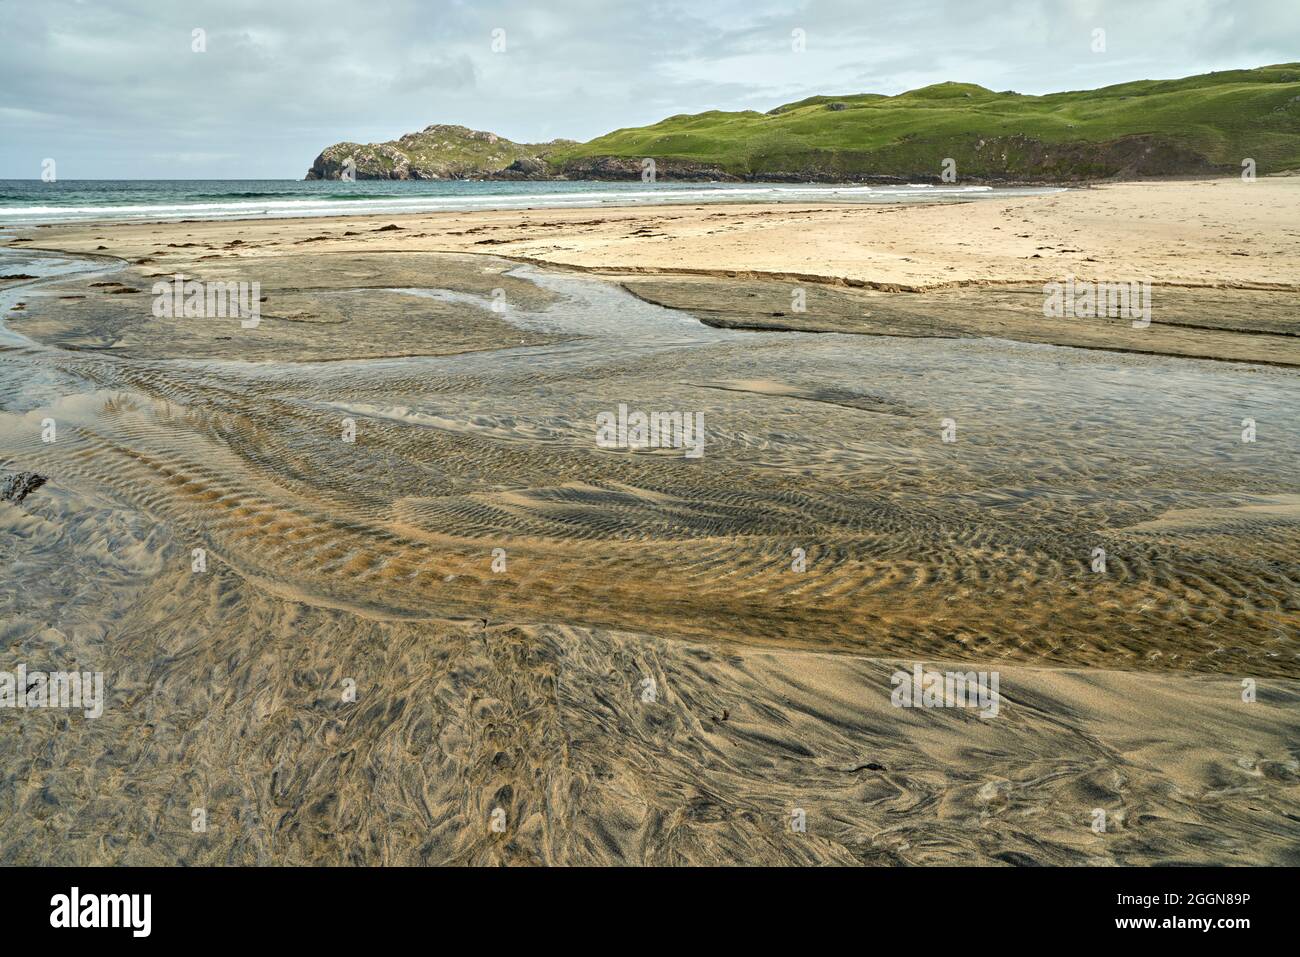 Détails fluviaux sur une plage où la tourbe est lavée dans le sable et la marée crée de beaux motifs. Reef Beach dans l'île de Lewis. Banque D'Images